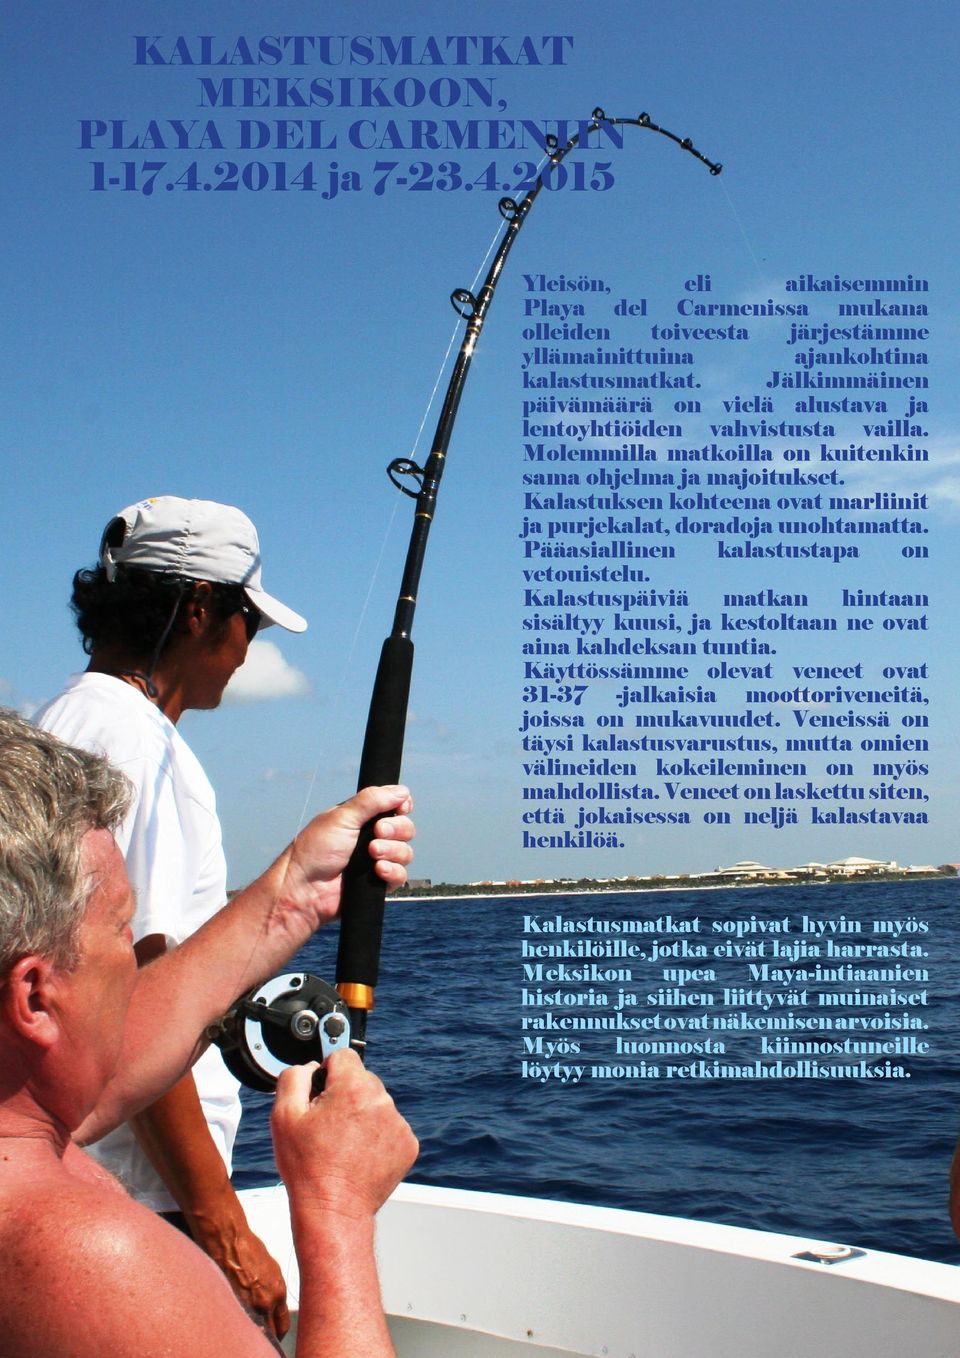 Kalastuksen kohteena ovat marliinit ja purjekalat, doradoja unohtamatta. Pääasiallinen kalastustapa on vetouistelu.